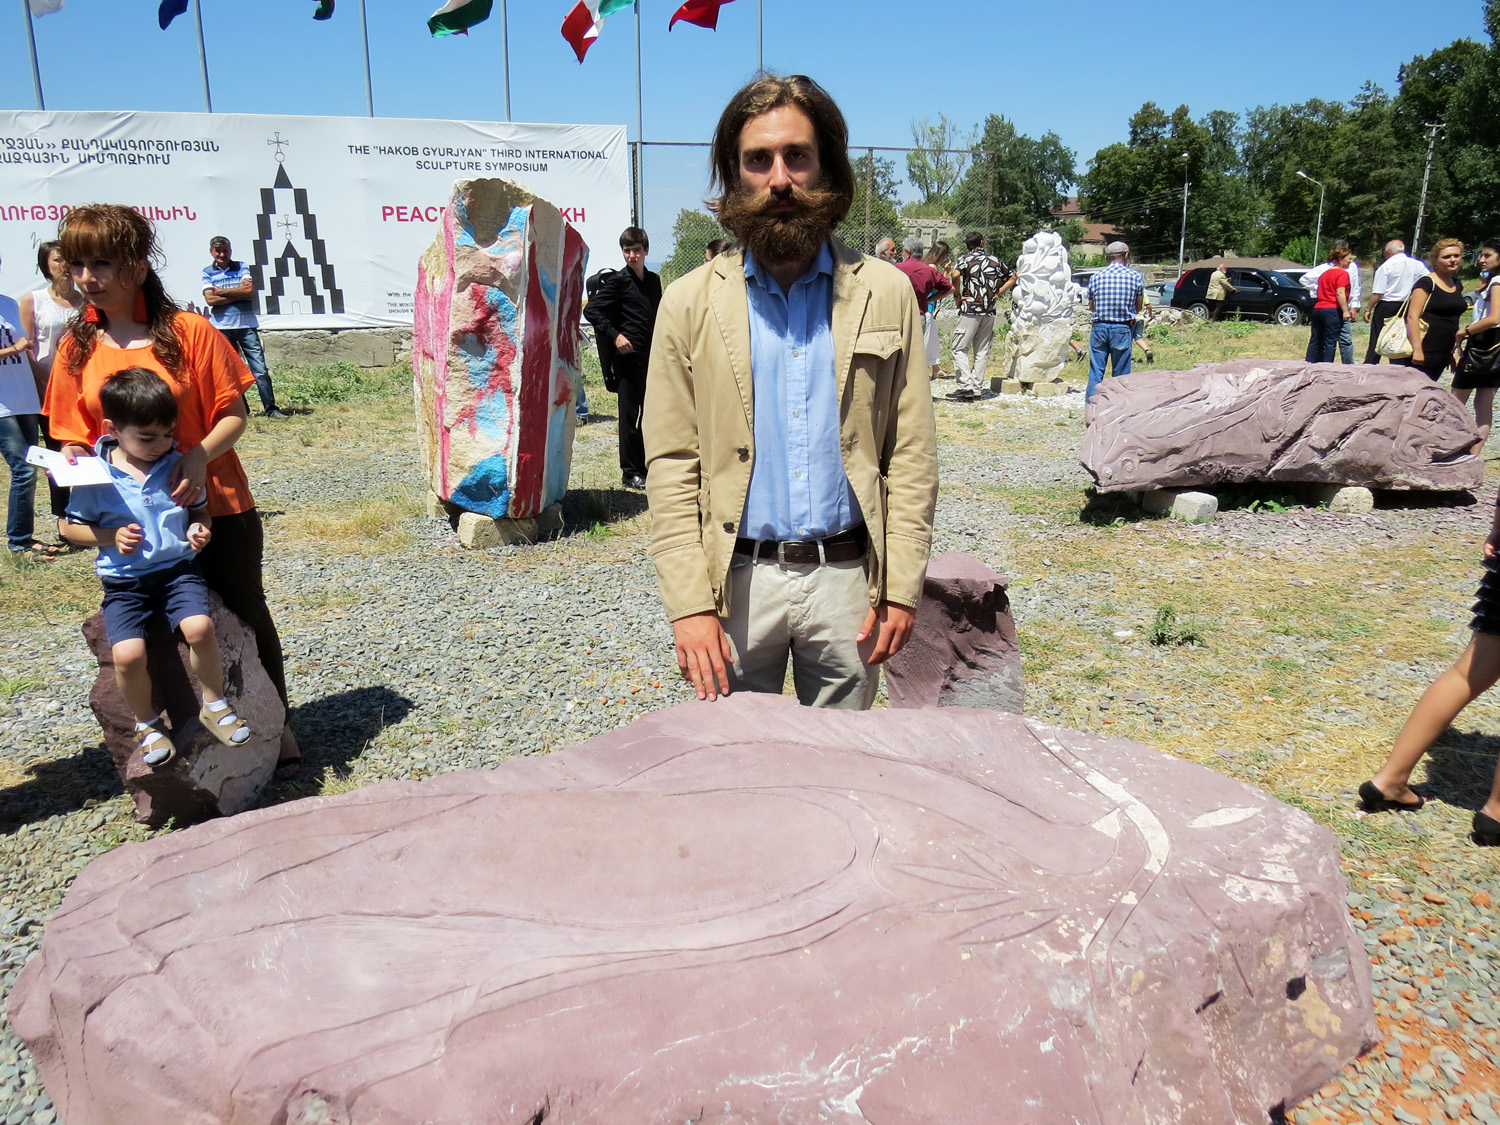 Итальянский скульптор Аугусто Липпи со своей работой "Стол мира".